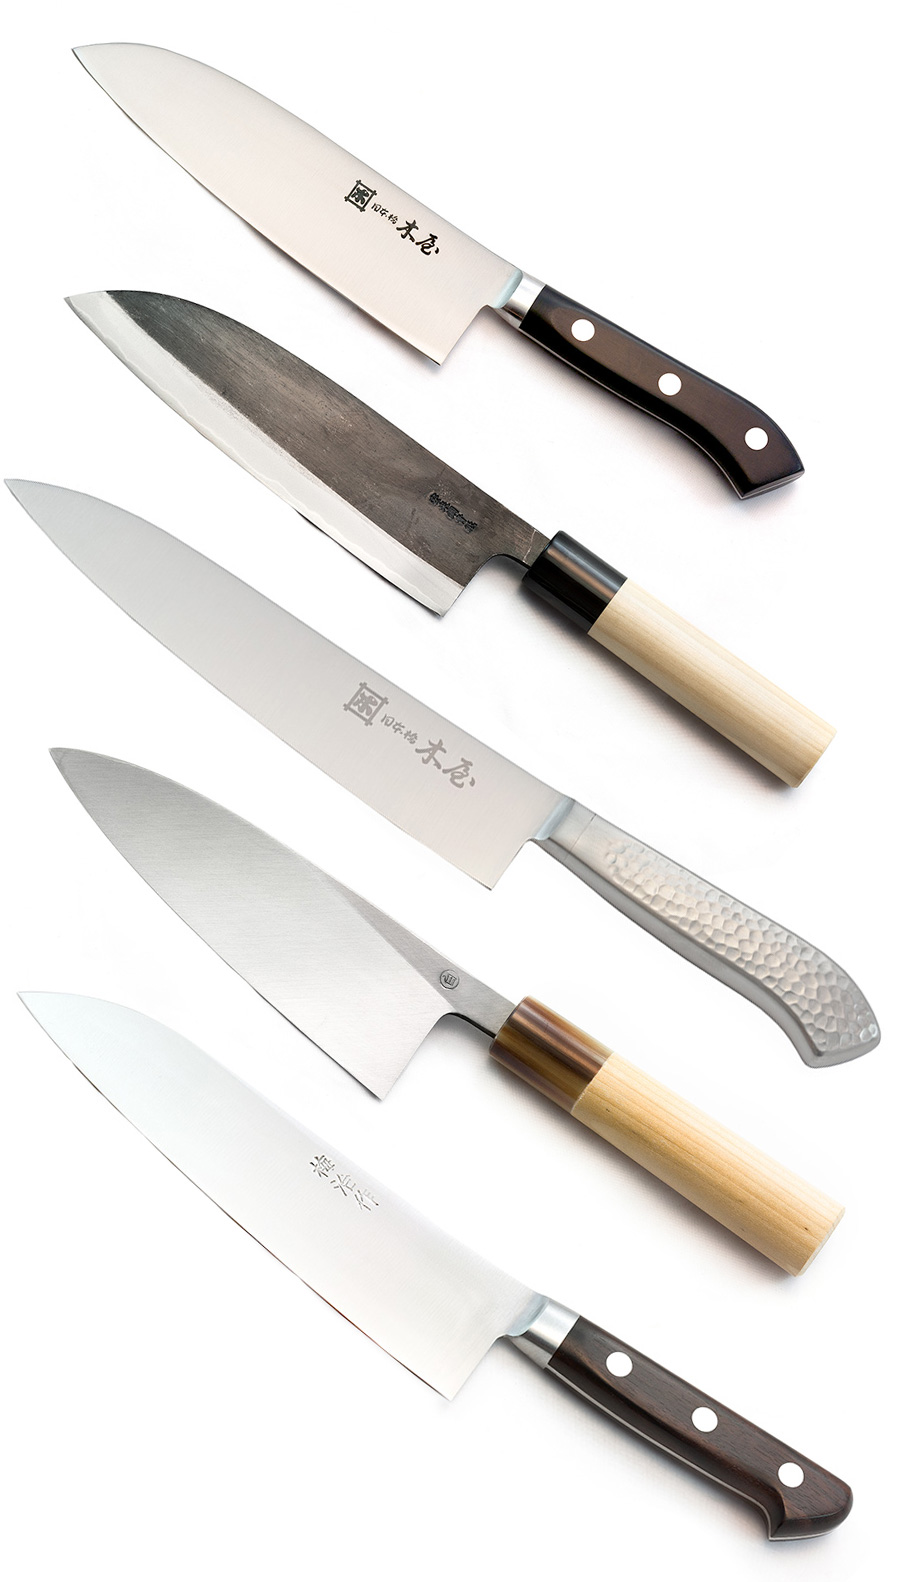 http://blog.fendrihan.com/wp-content/uploads/2013/07/Japanese_European_knives.jpg